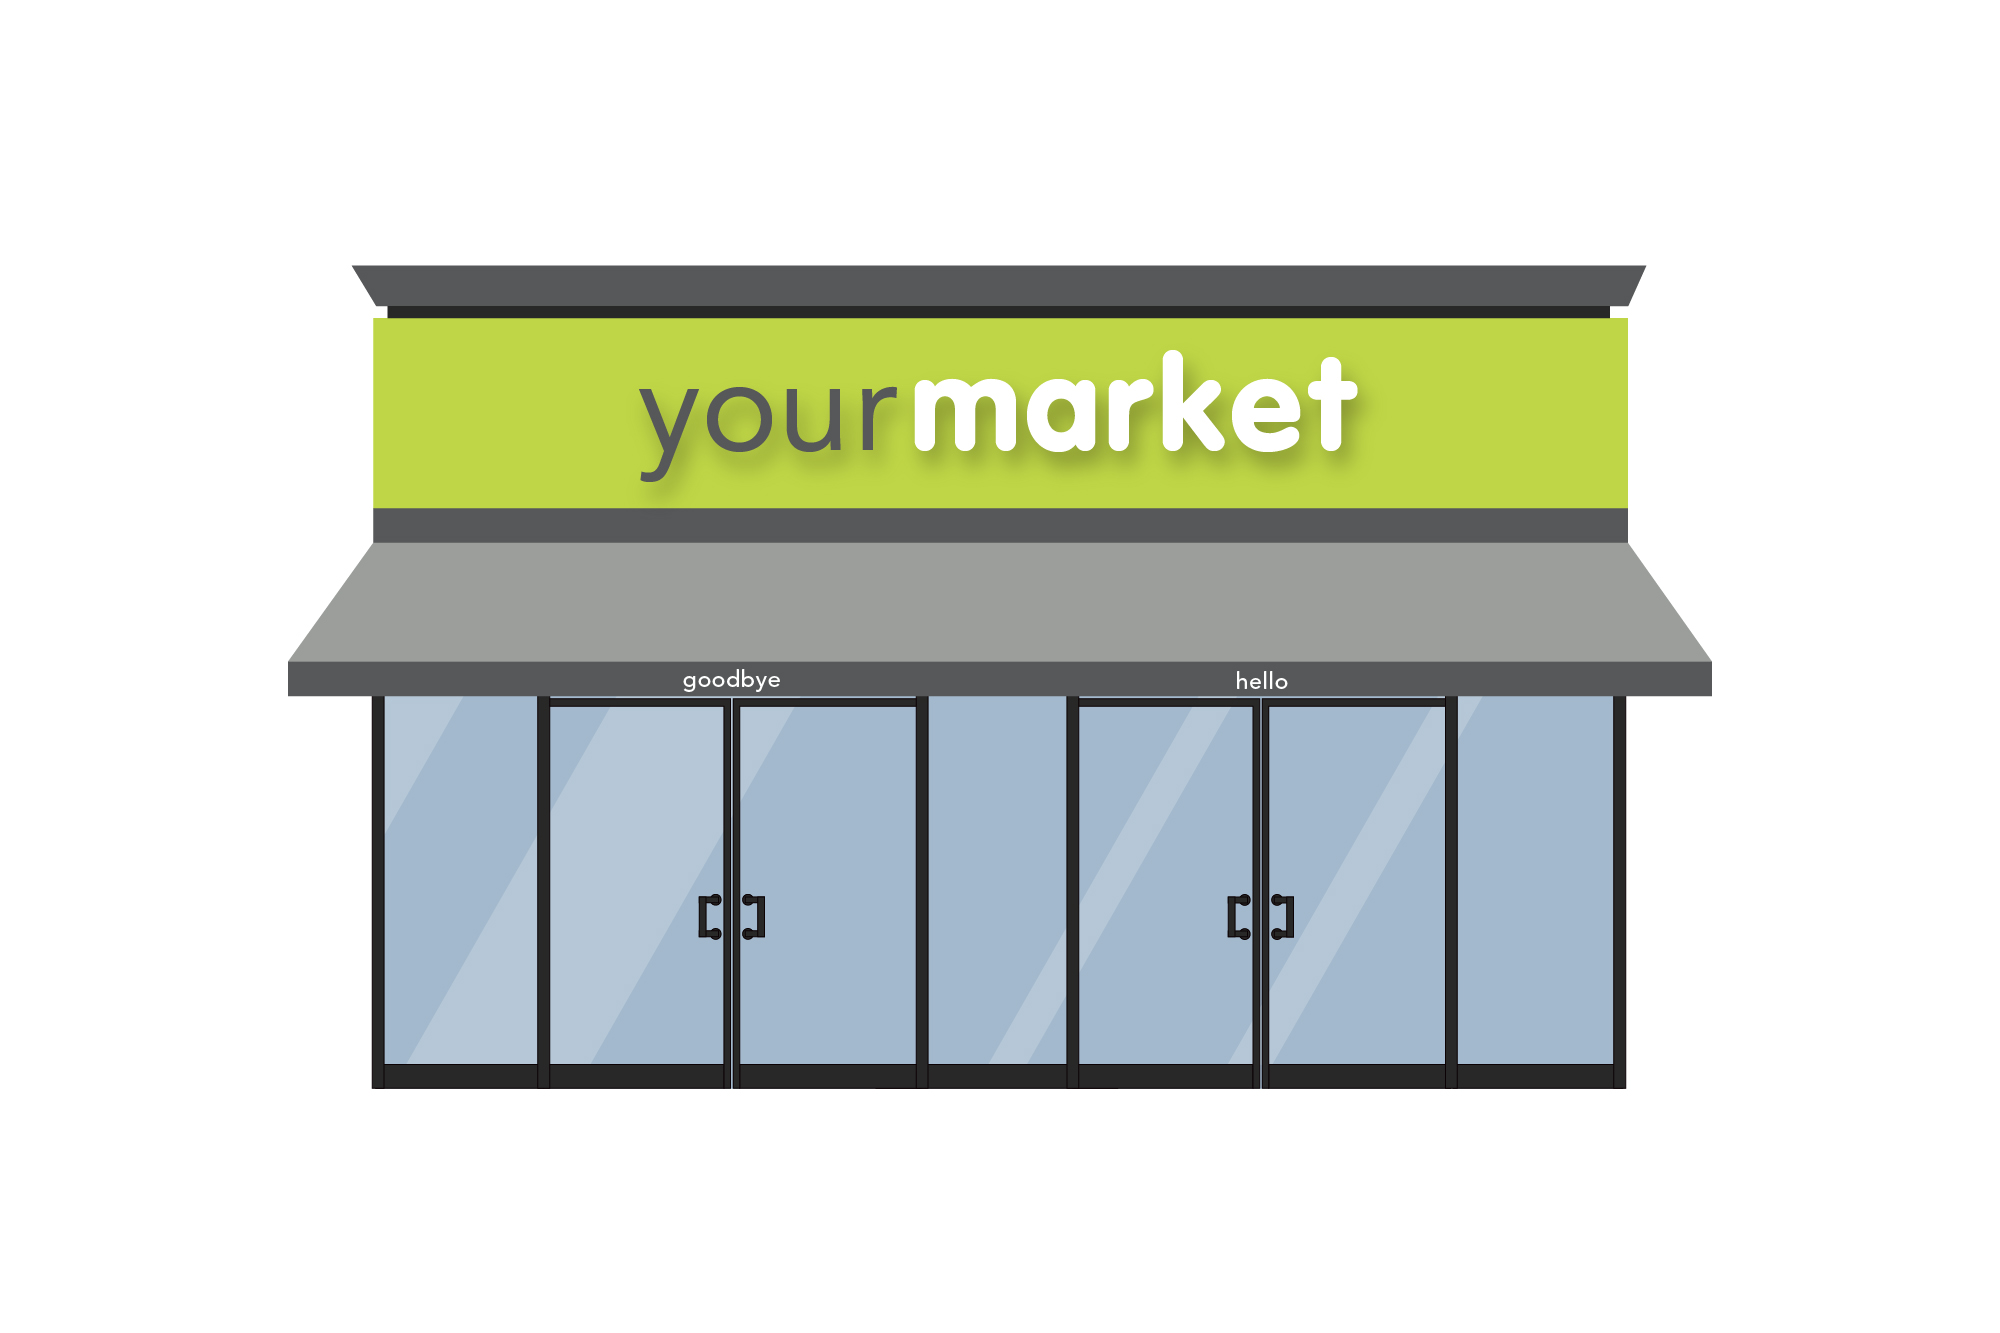 sarah holley design - your market - exterior